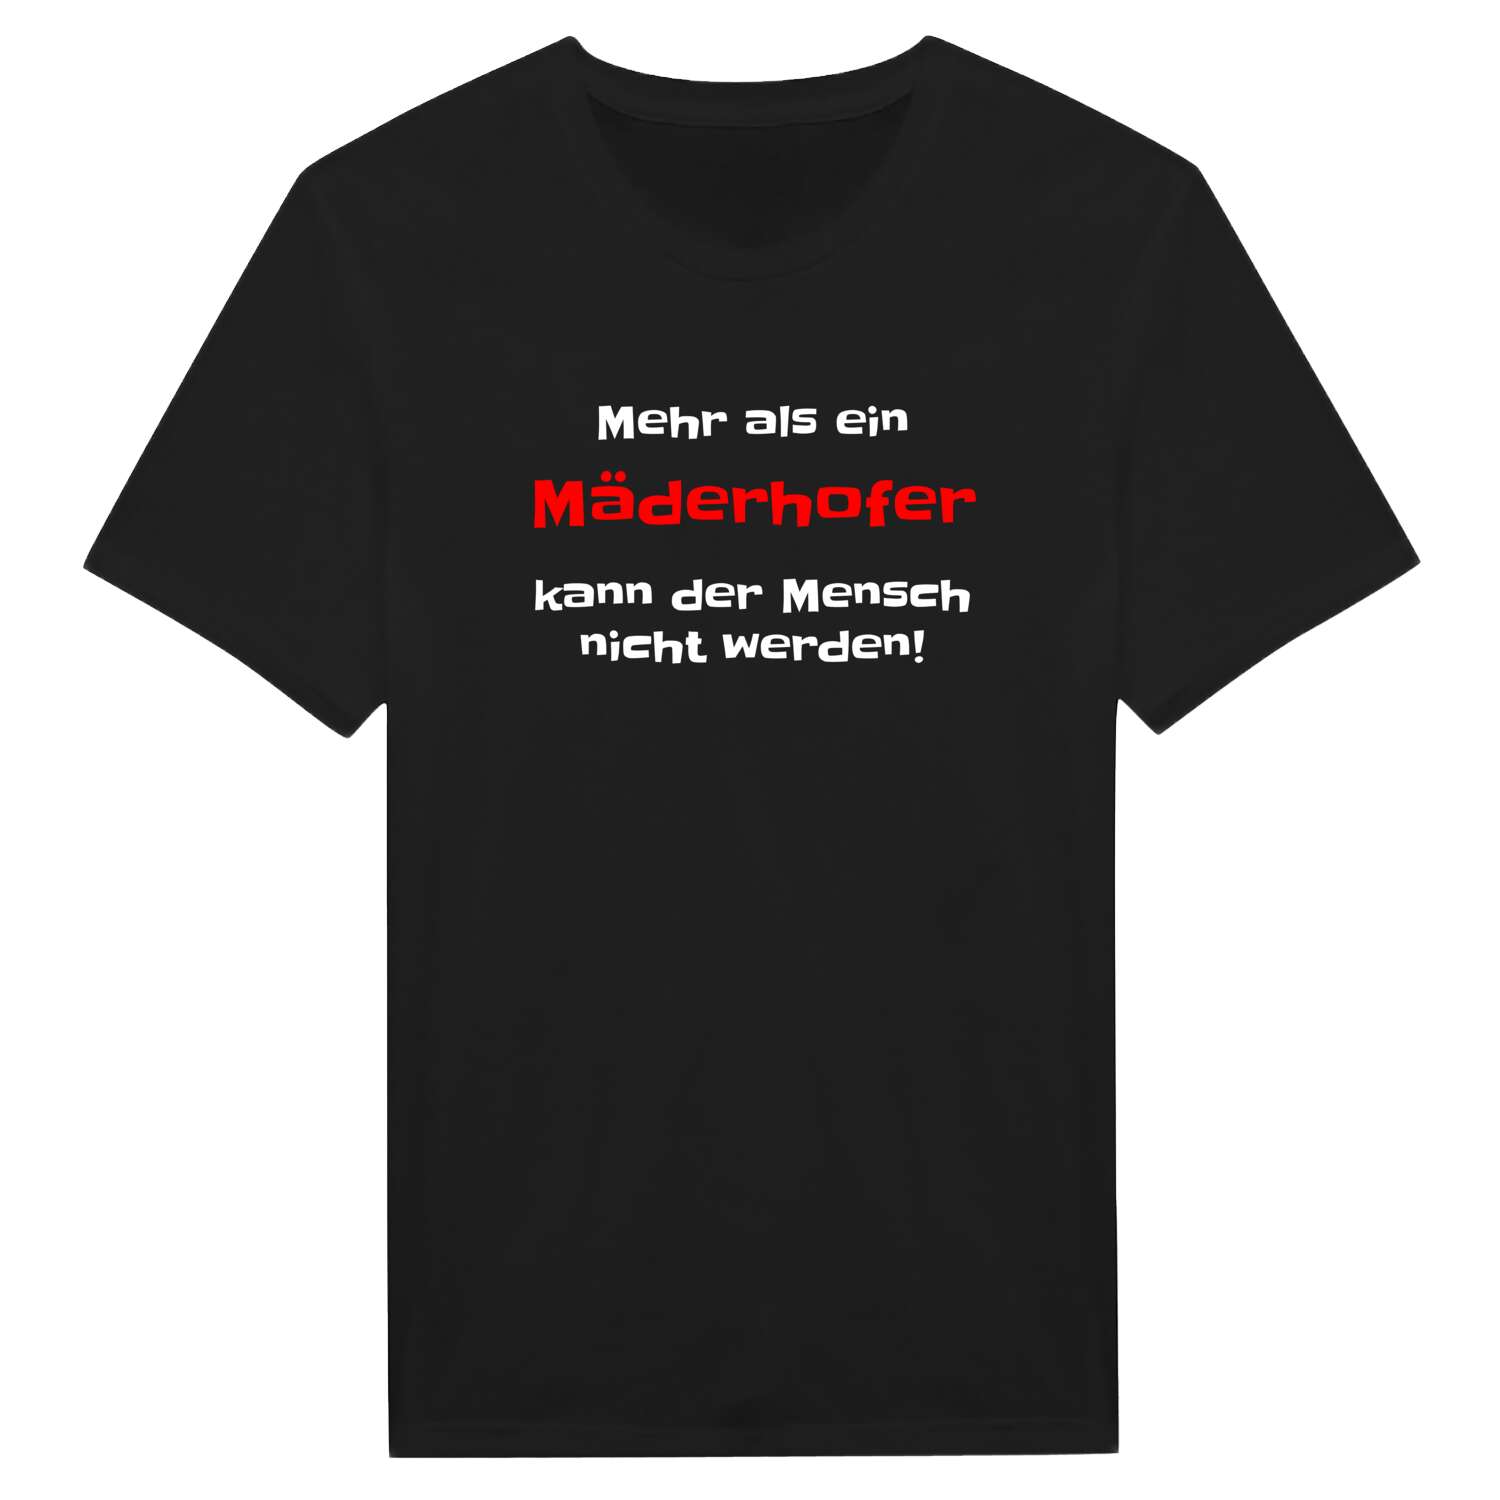 Mäderhof T-Shirt »Mehr als ein«